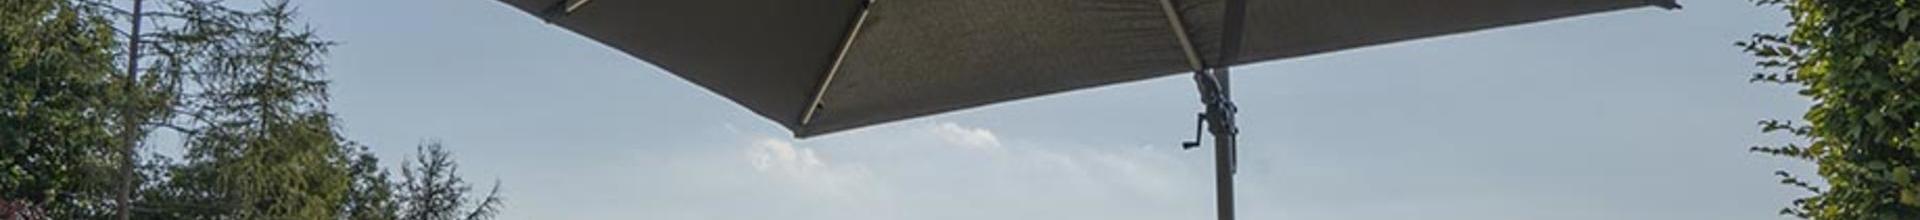 Bramblecrest Chichester 3x3m Grey Parasols